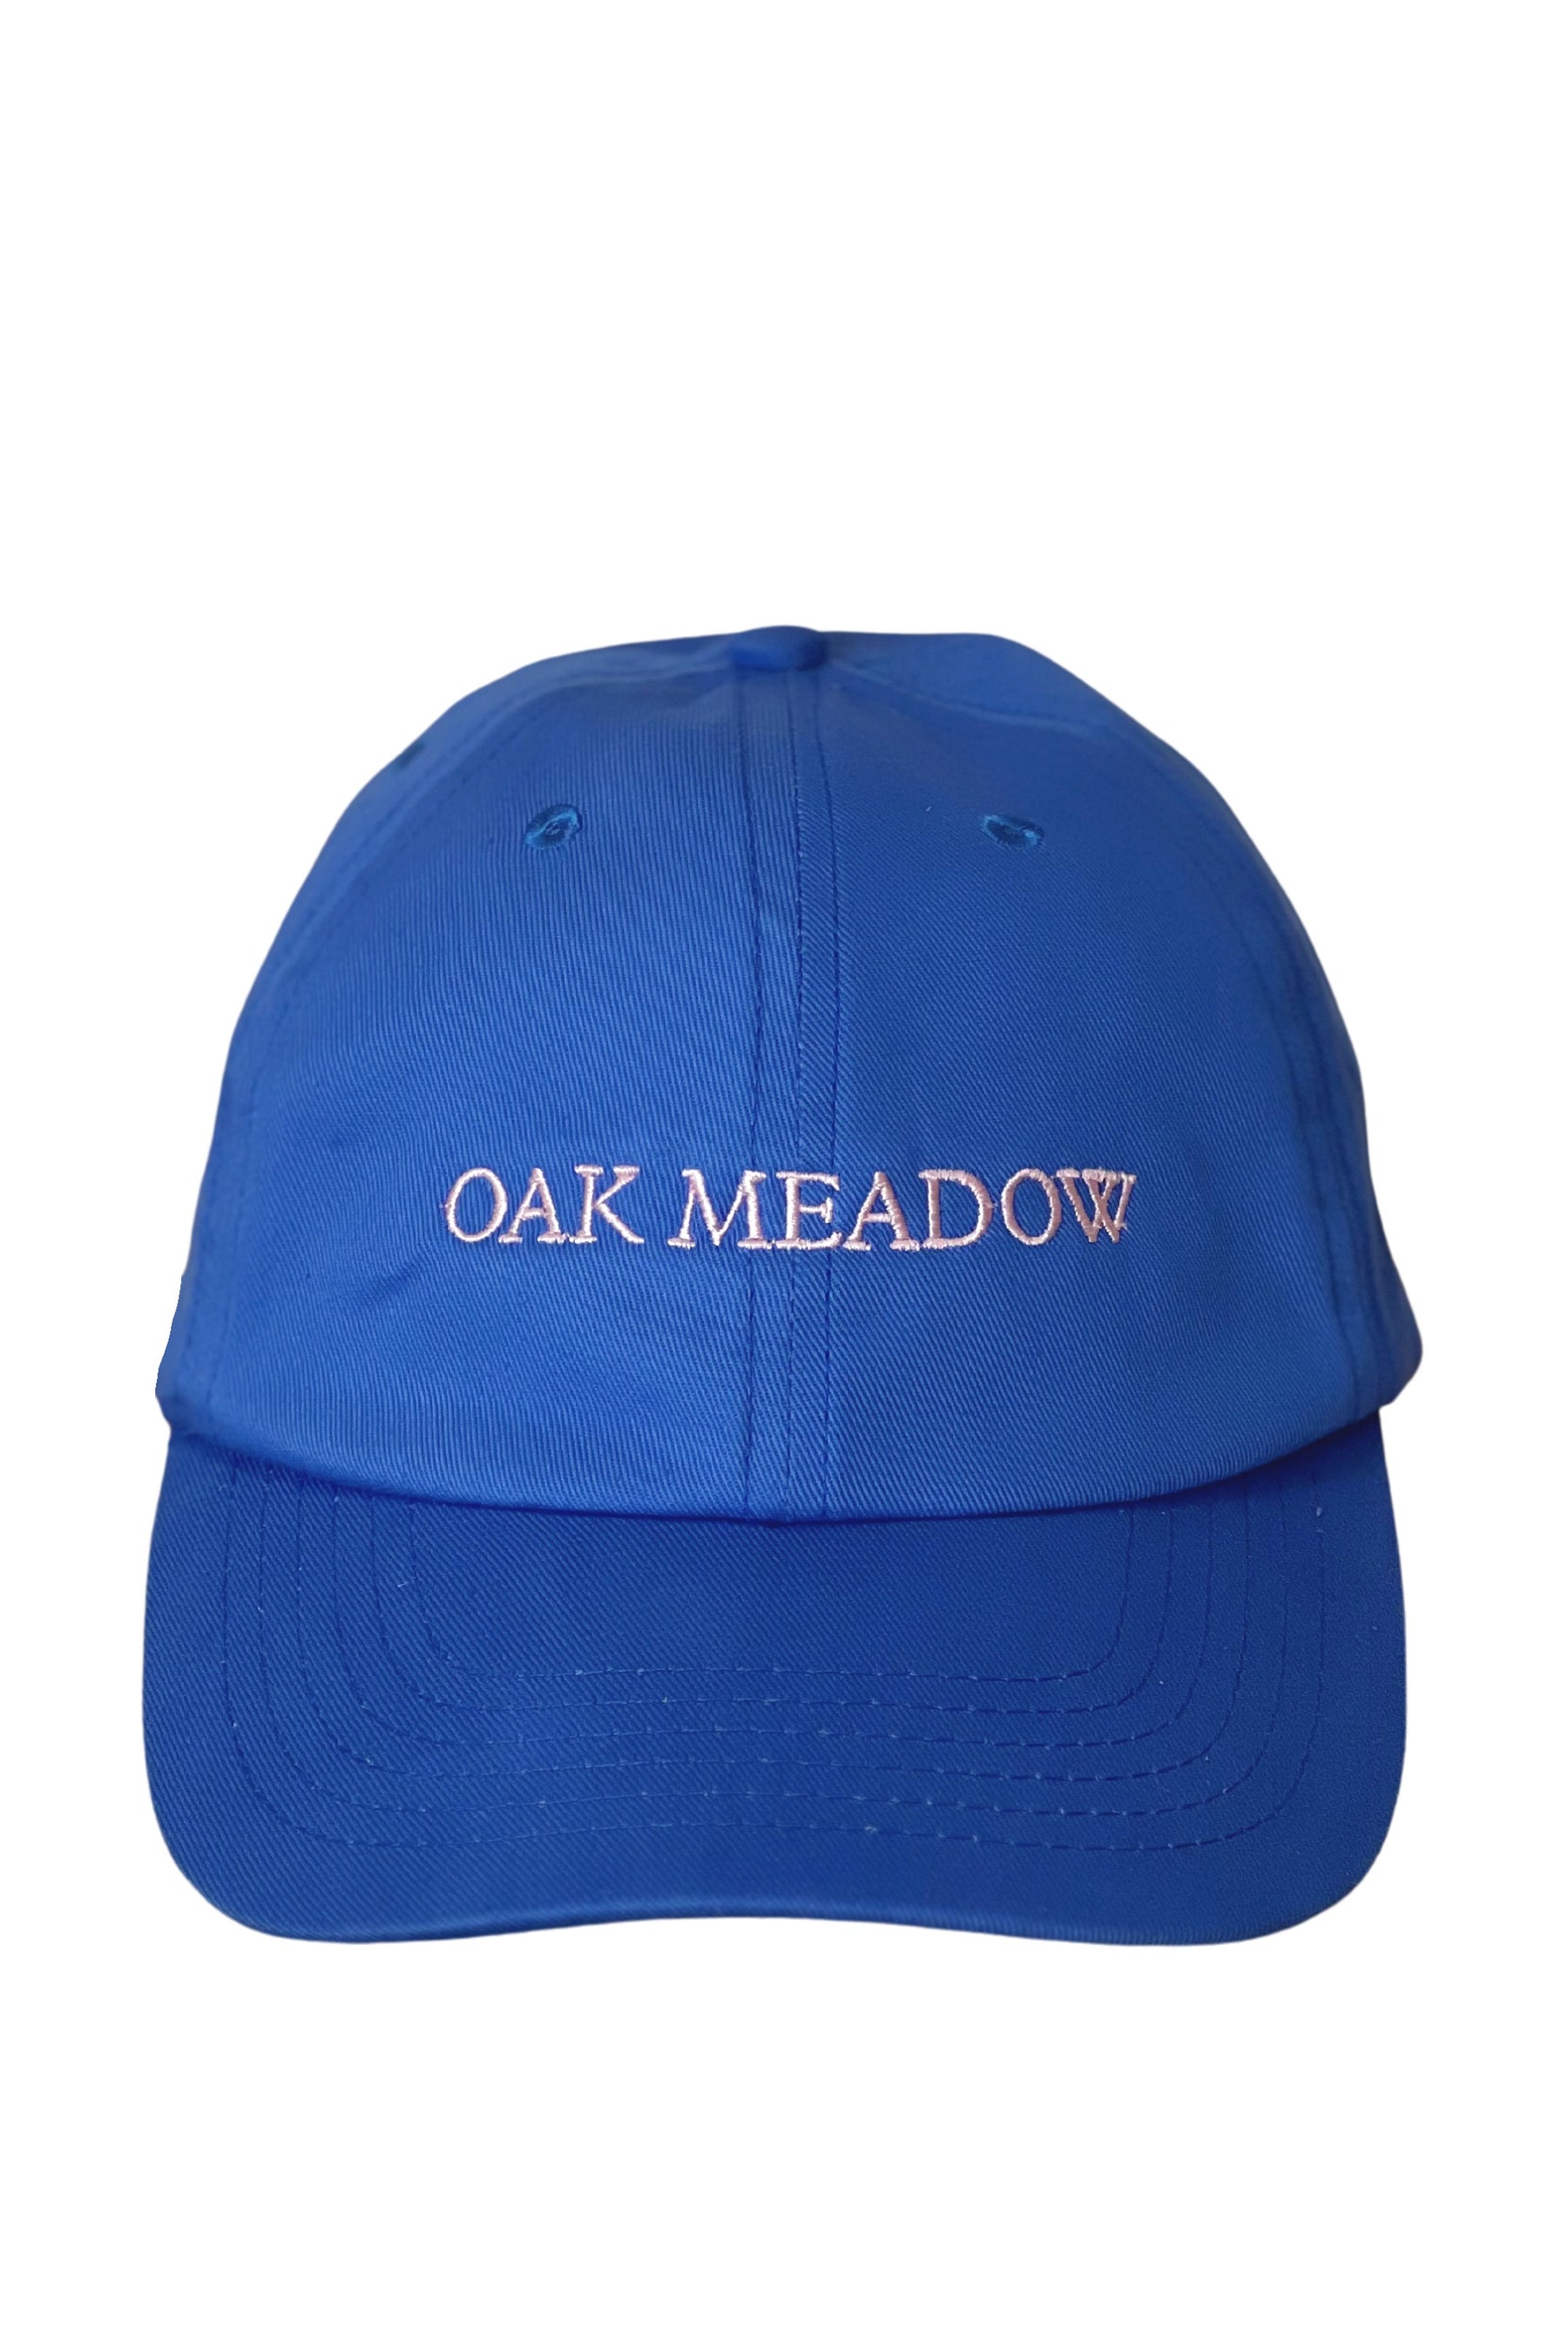 Oak Meadow Hat in Navy